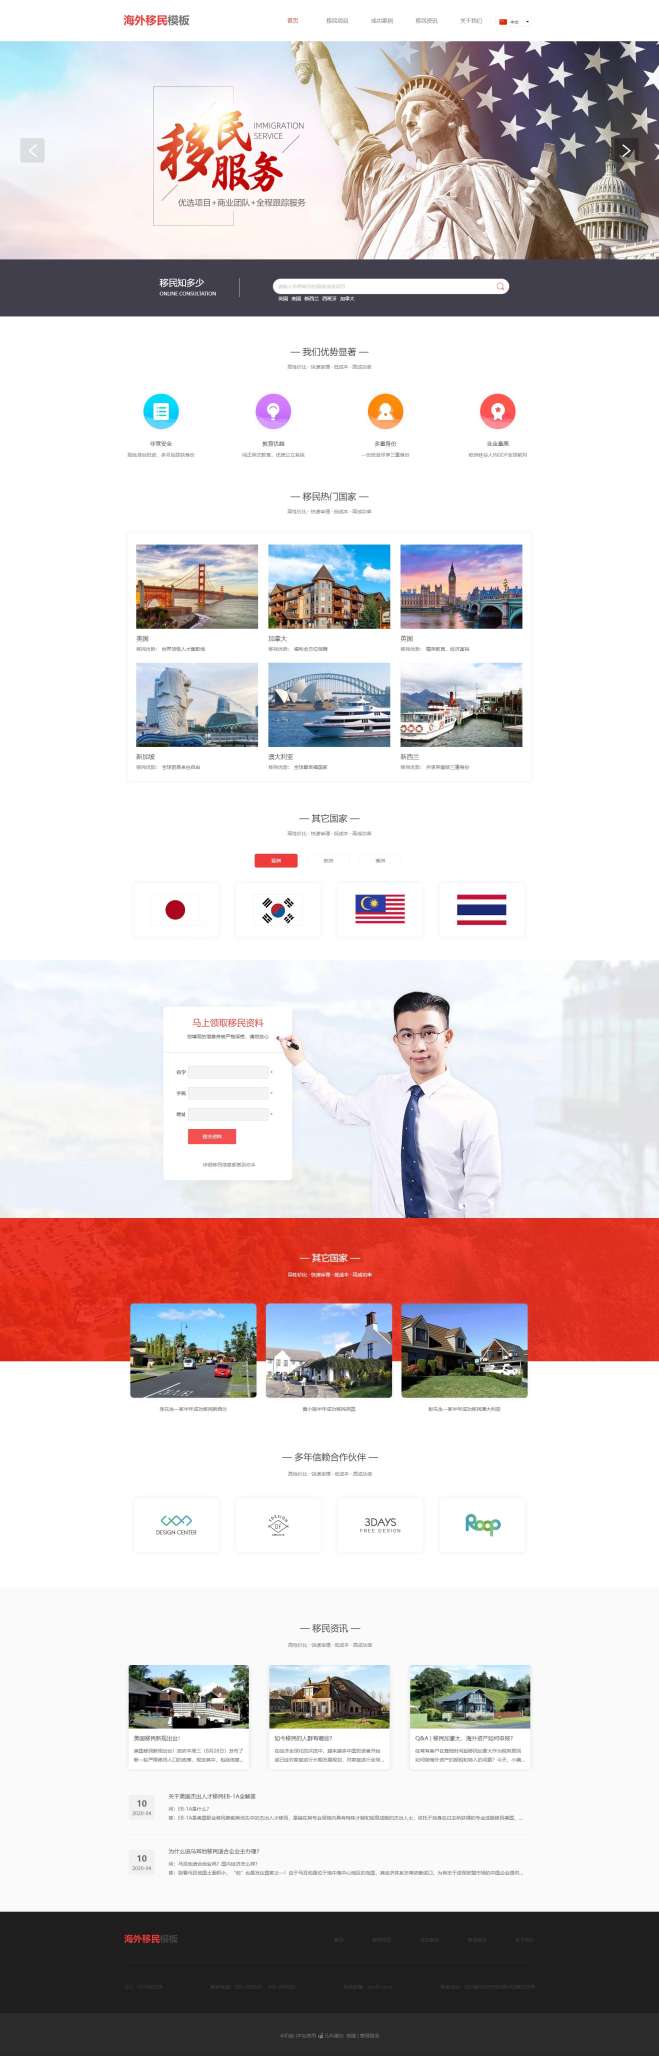 专业海外移民网站模板